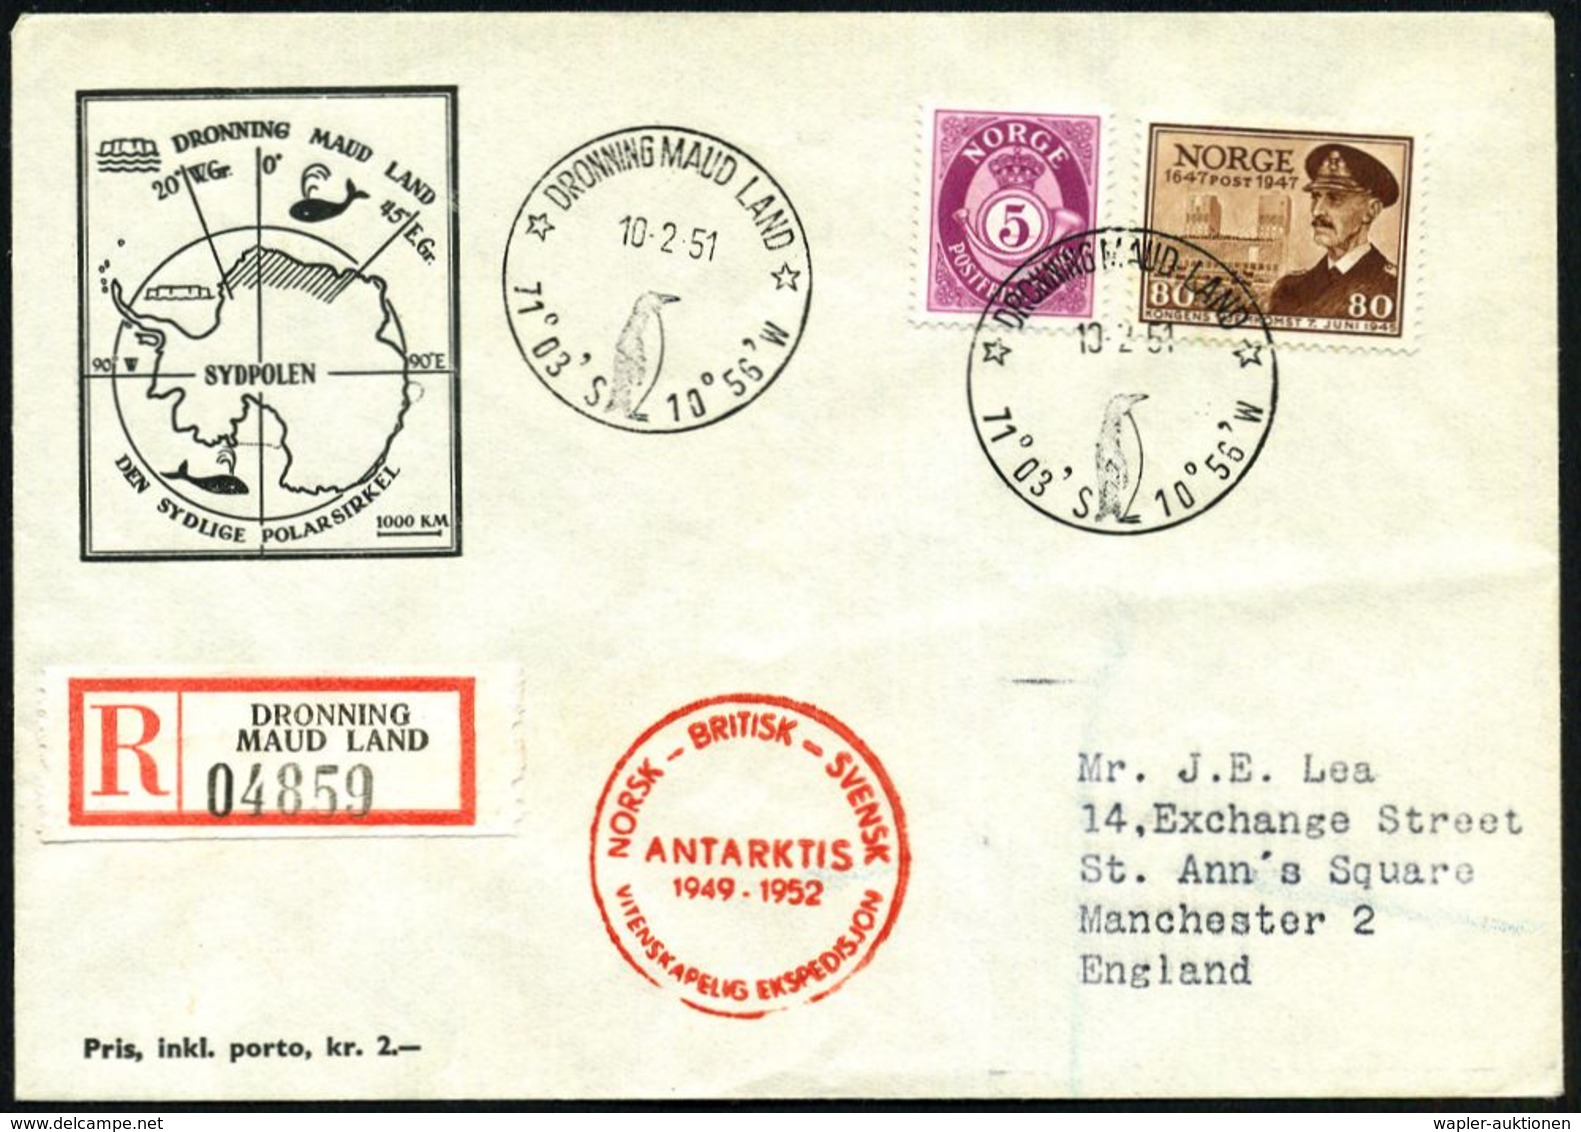 NORWEGEN /  GROSSBRIT. /  SCHWEDEN 1951 (10.2.) 1K-HWSt.: DRONNING MAUD LAND/71°03' S 10°56'W (Pinguin) + Seltener RZ: D - Antarktis-Expeditionen